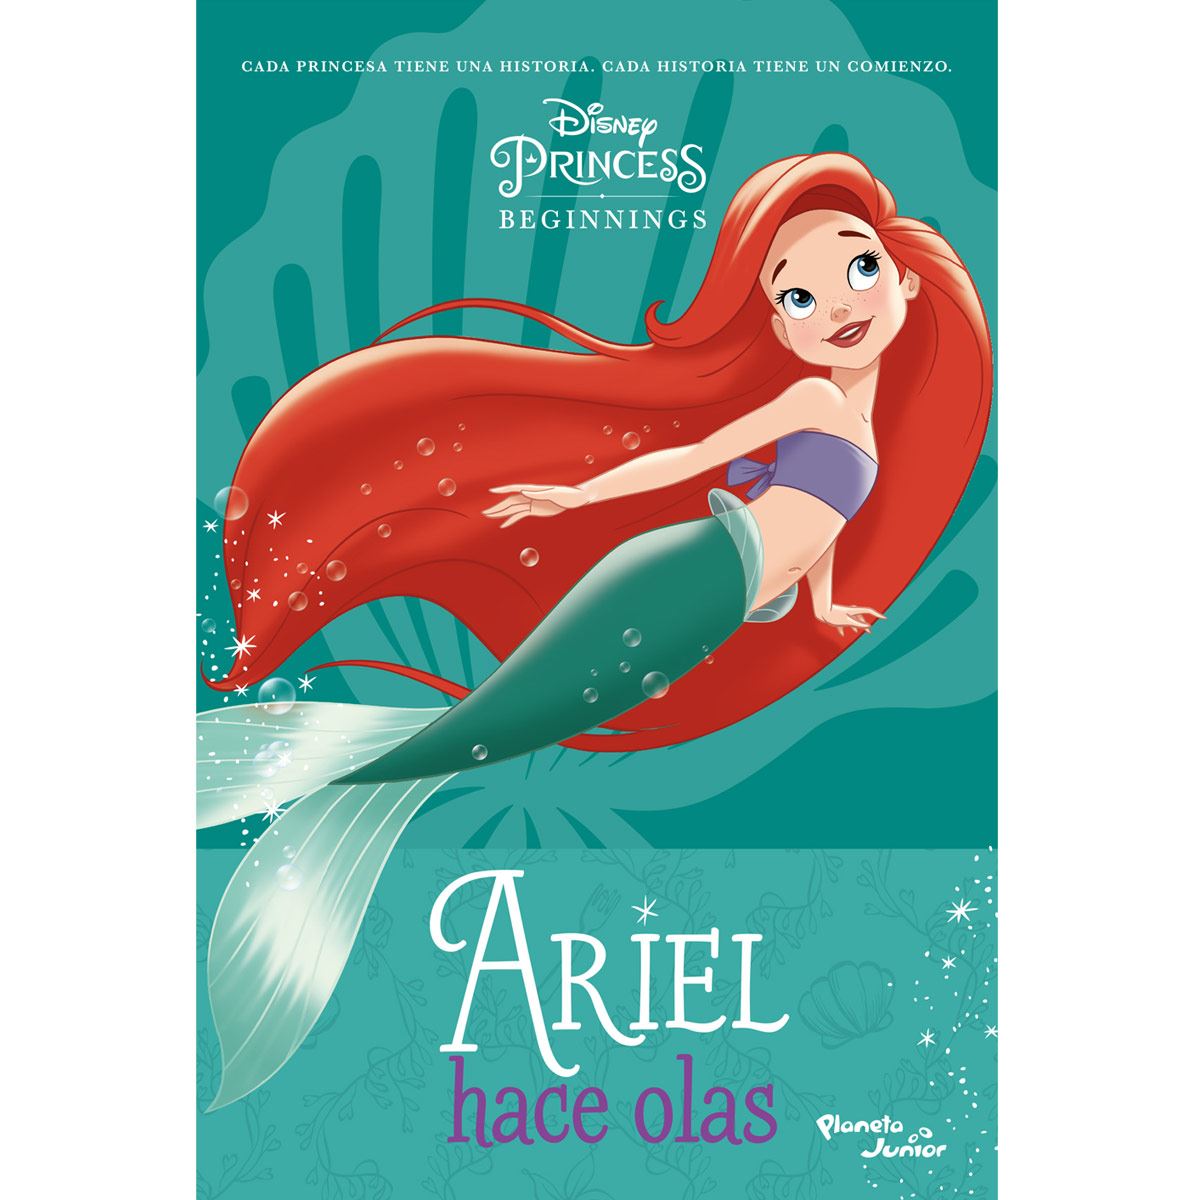 Ariel hace olas